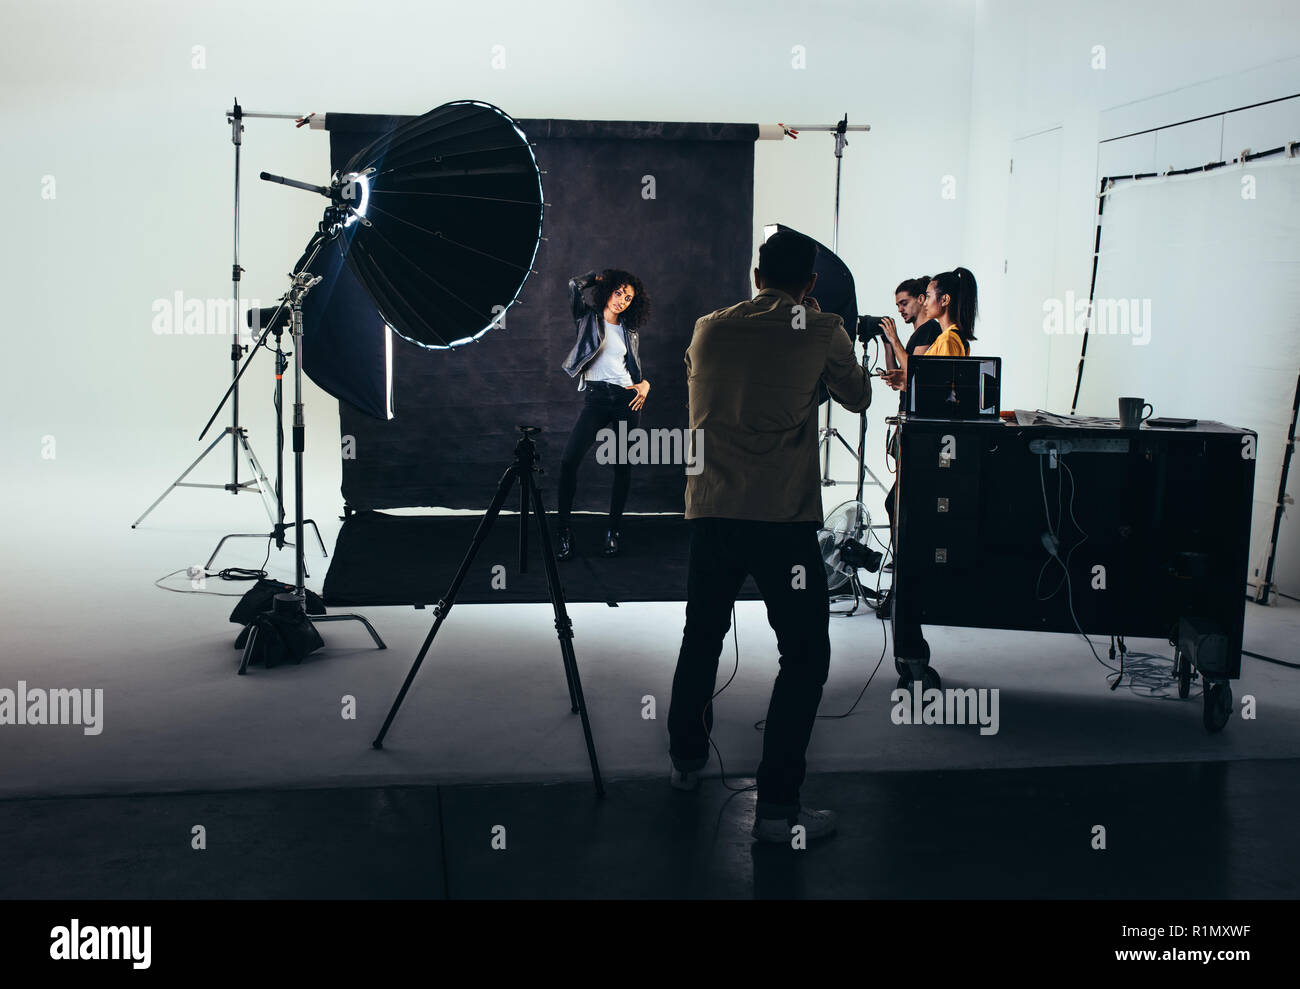 Fotografo scatta le foto di un modello femminile con studio flash luci accese. Il fotografo con il suo team durante un servizio fotografico. Foto Stock